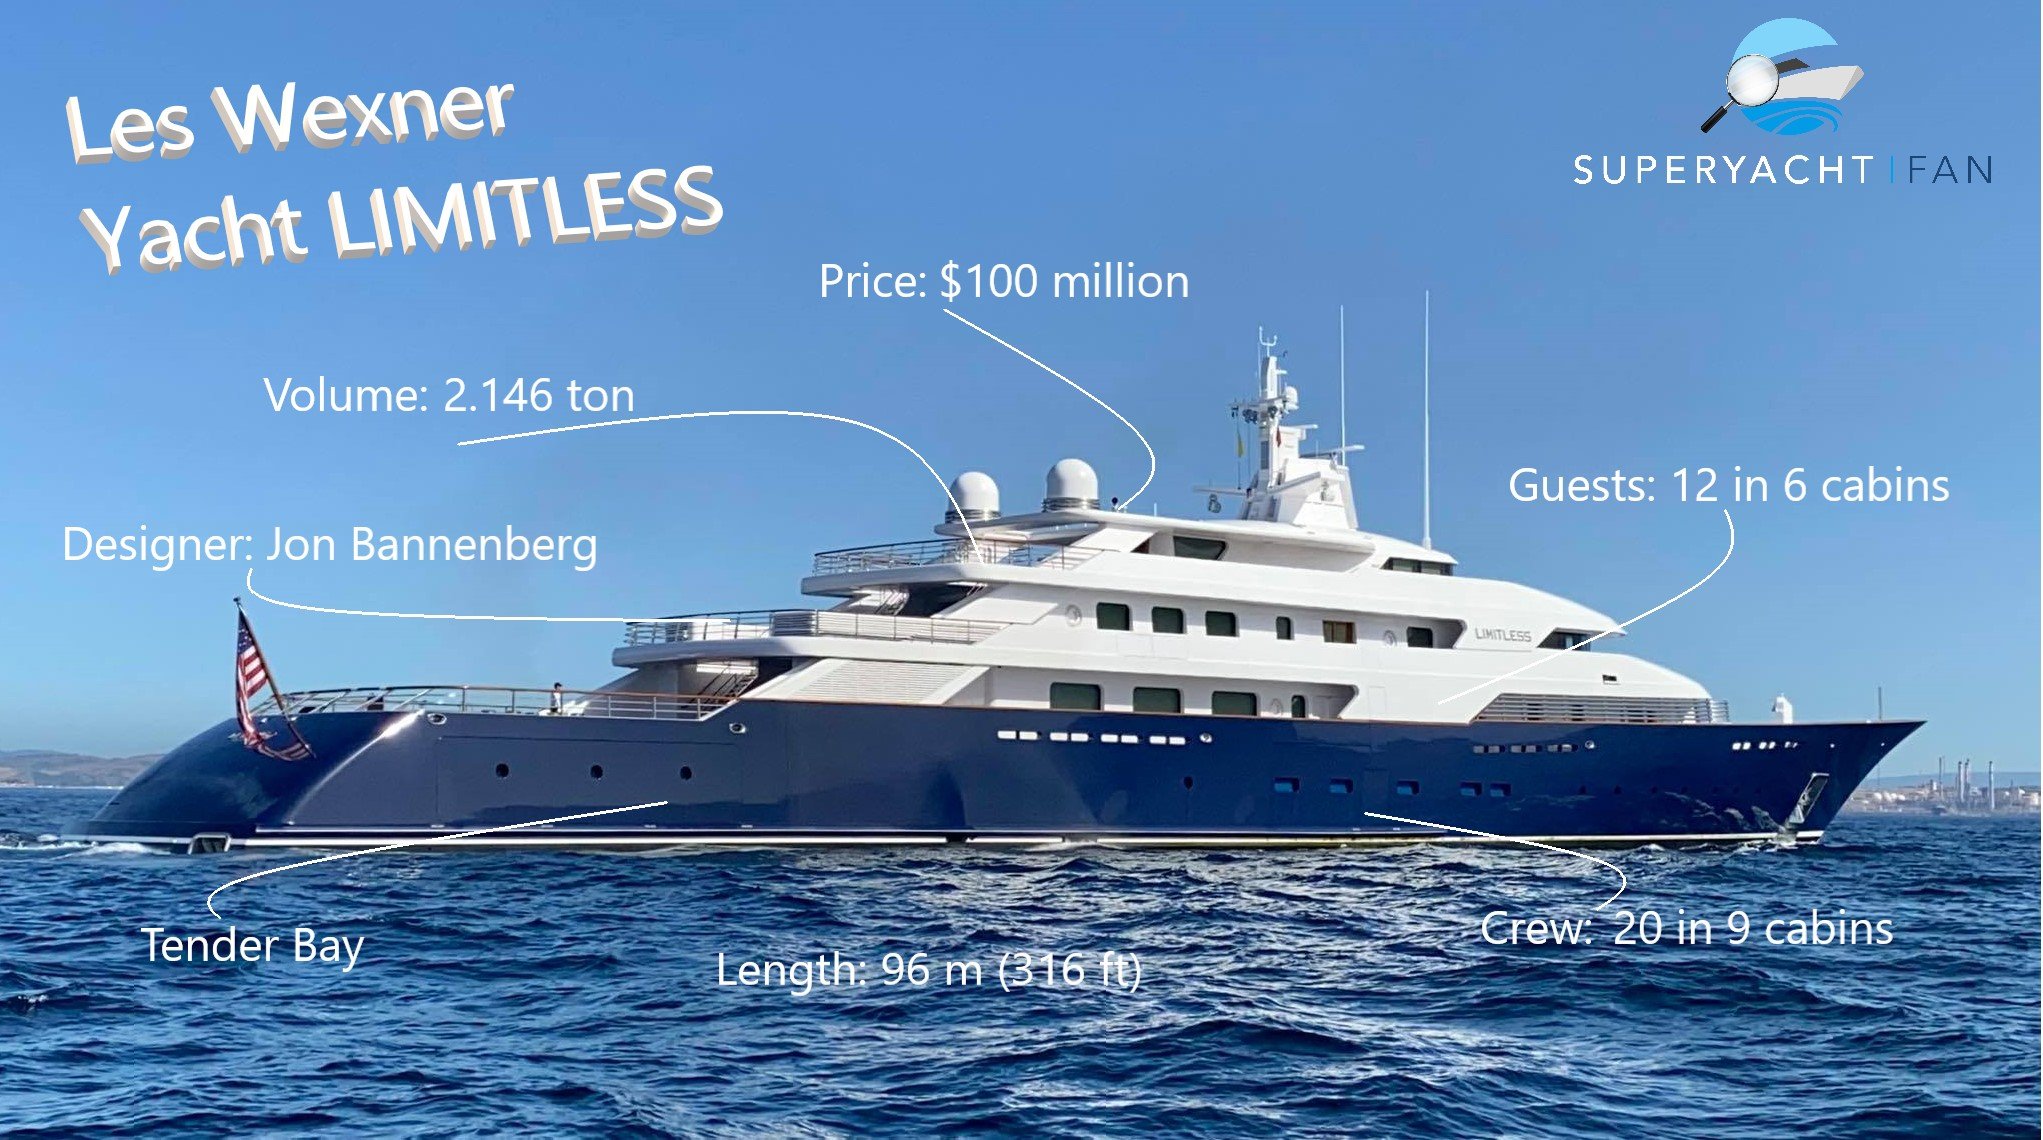 Lex Wexner Yacht LIMITLESS